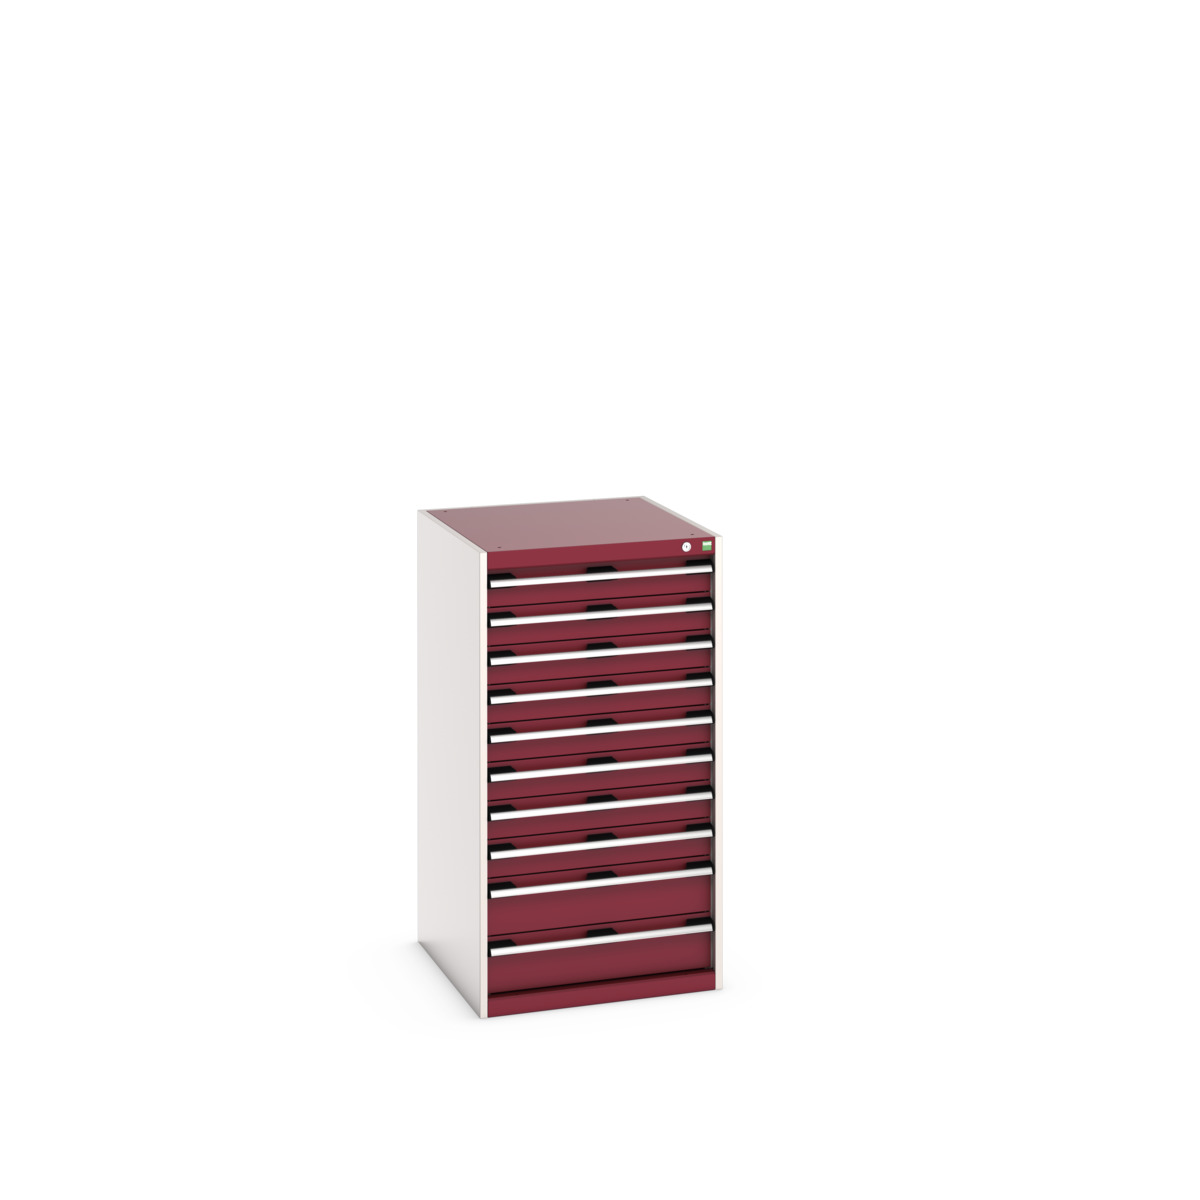 40027043.24V - cubio drawer cabinet